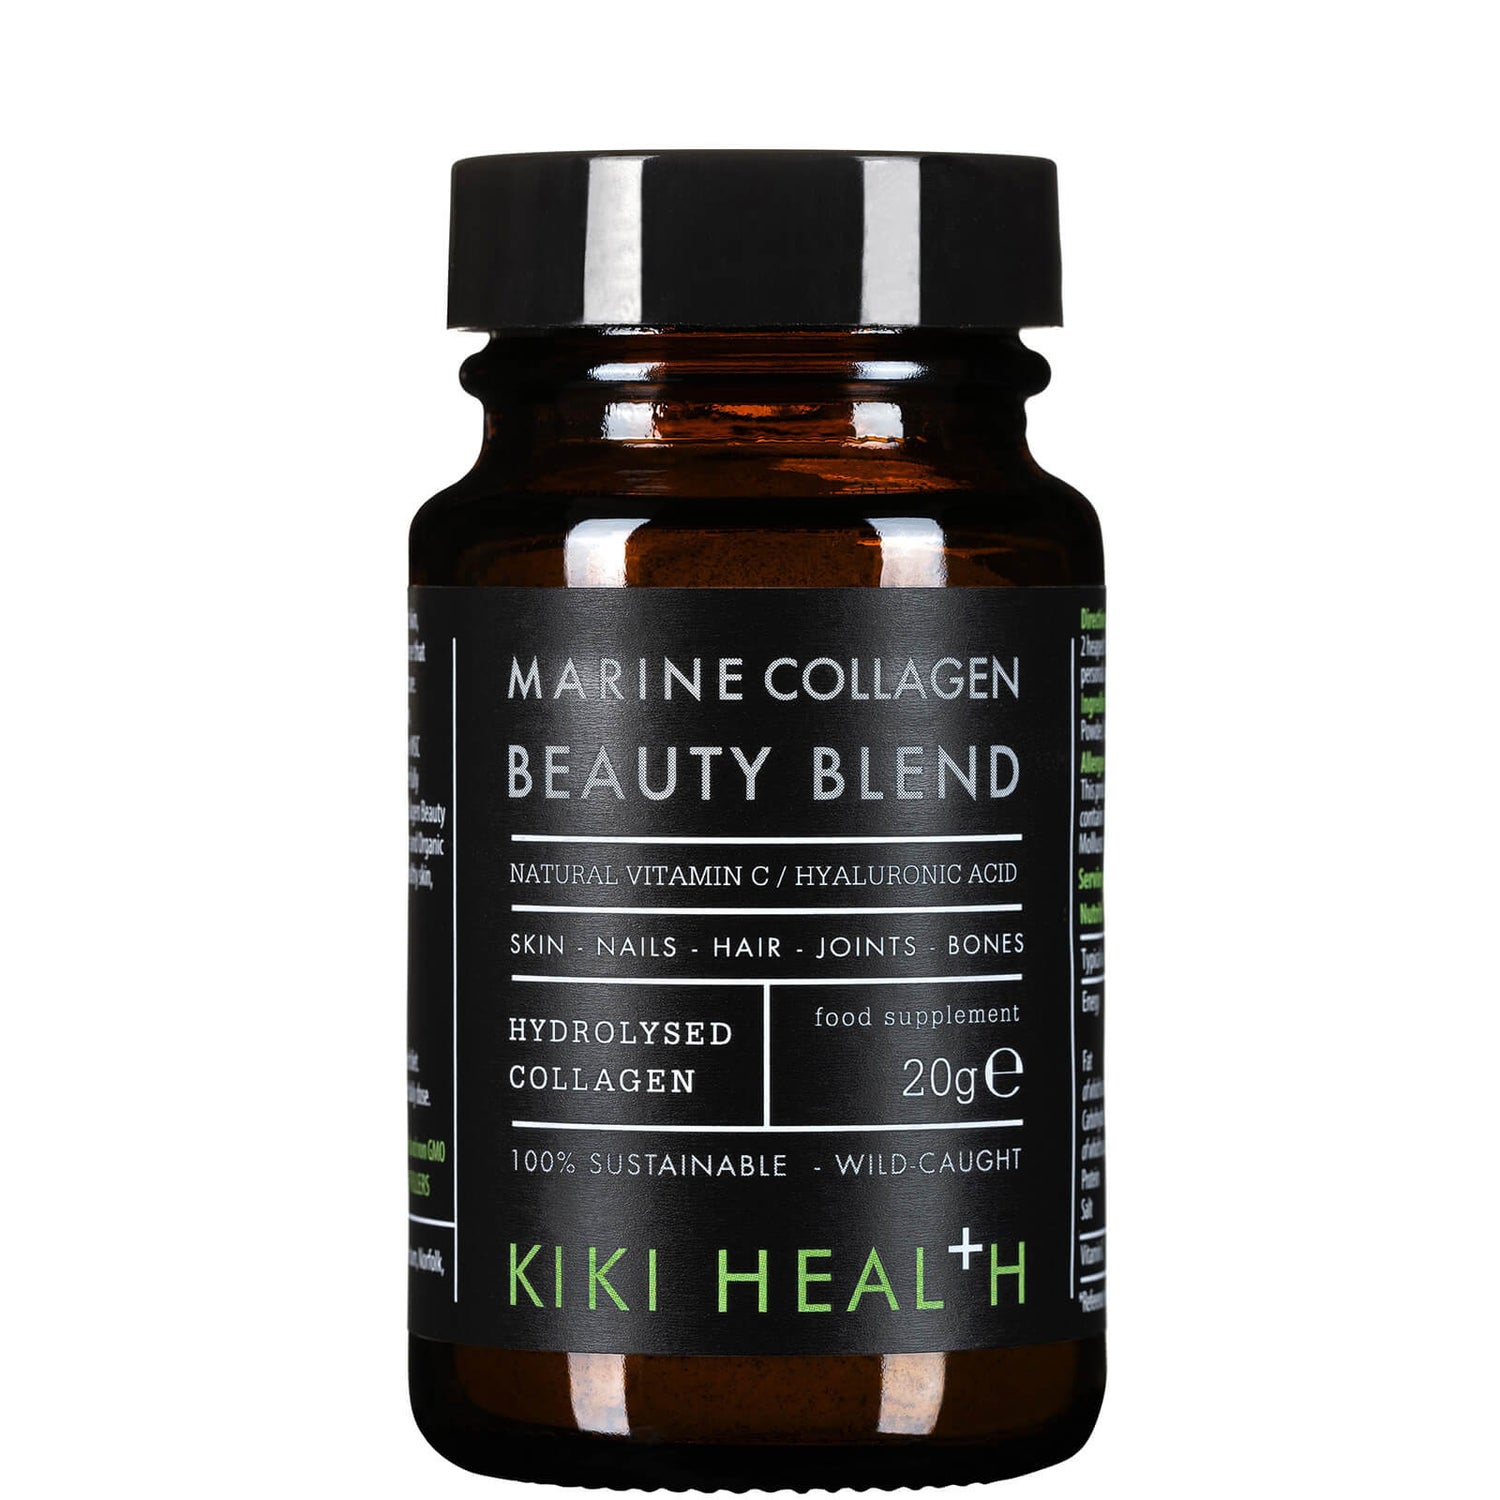 KIKI Health Marine Collagen Beauty Blend Powder 20g